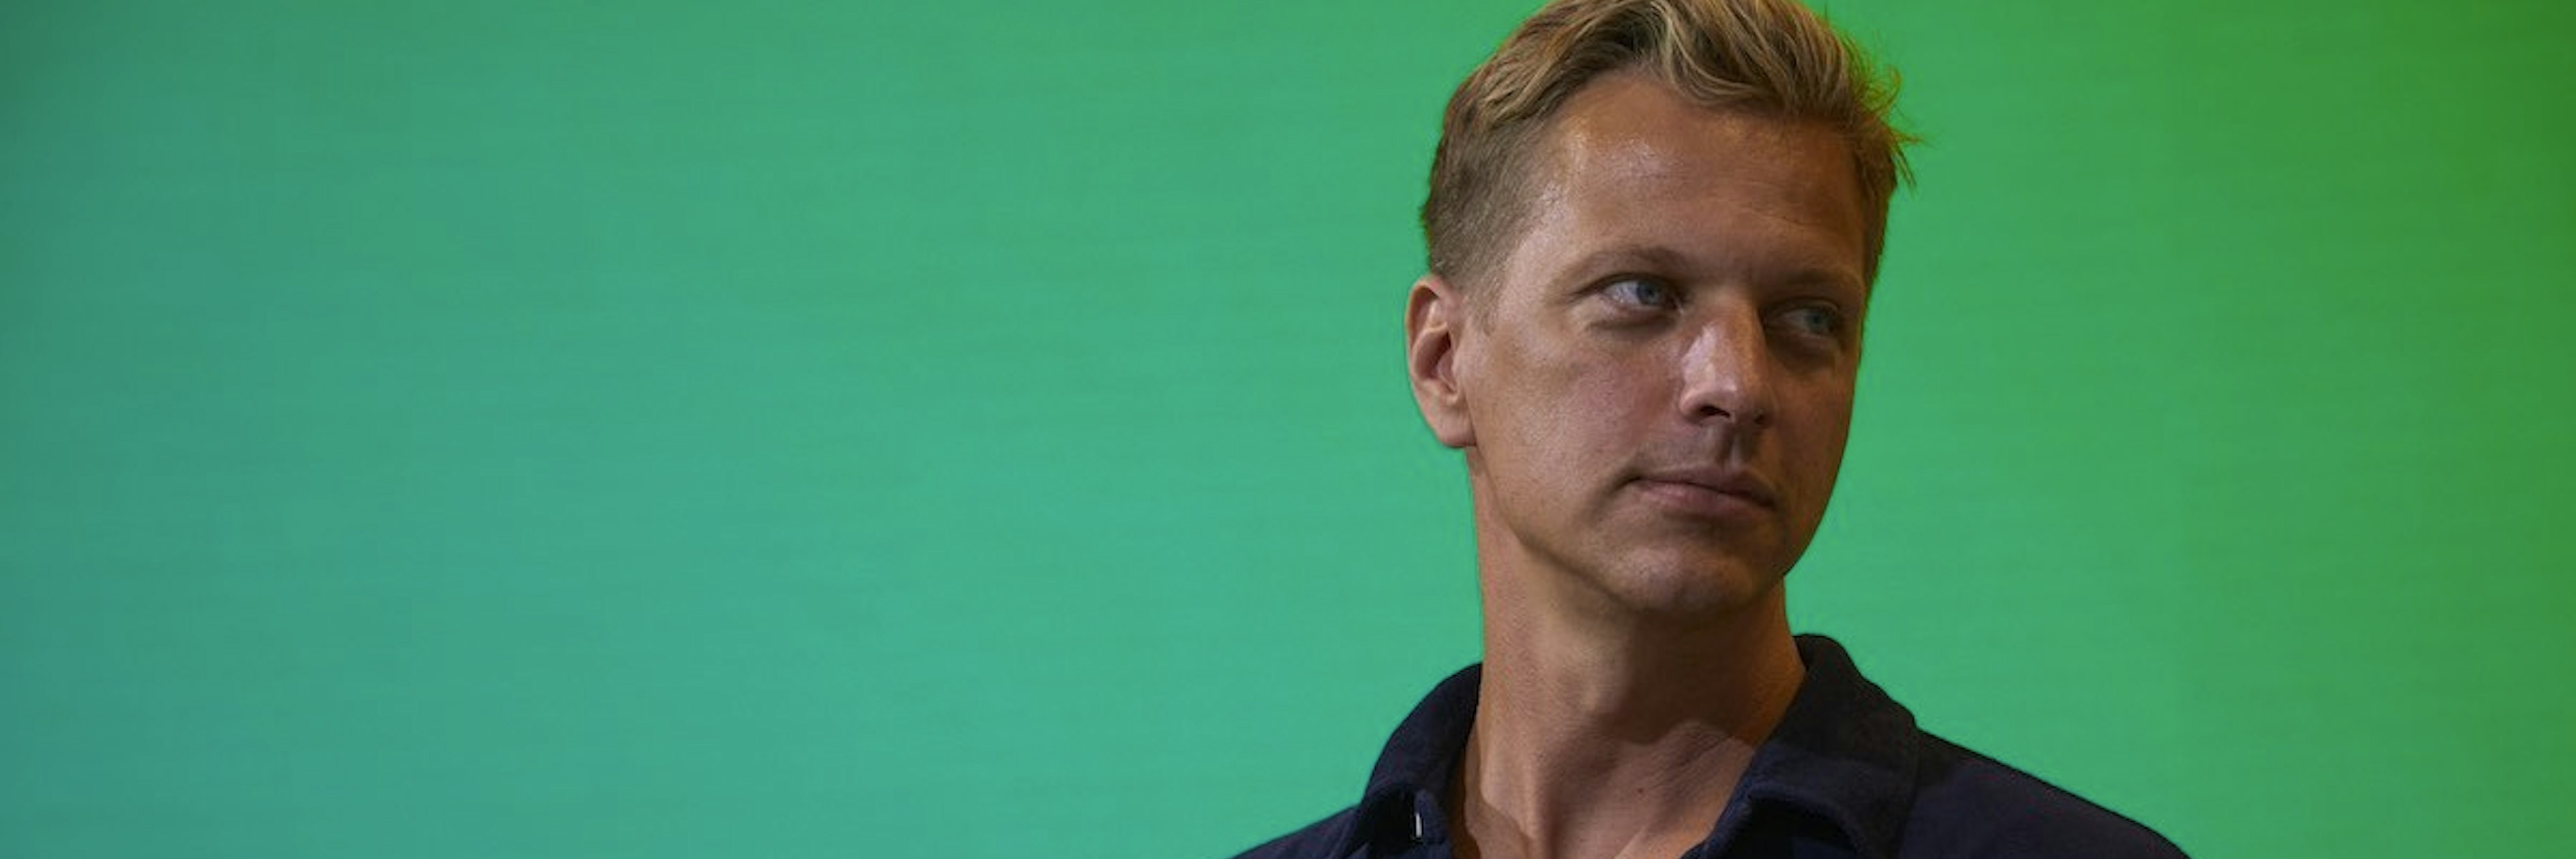 Henrik Landgren is cofounder of the startup lender ArK Kapital